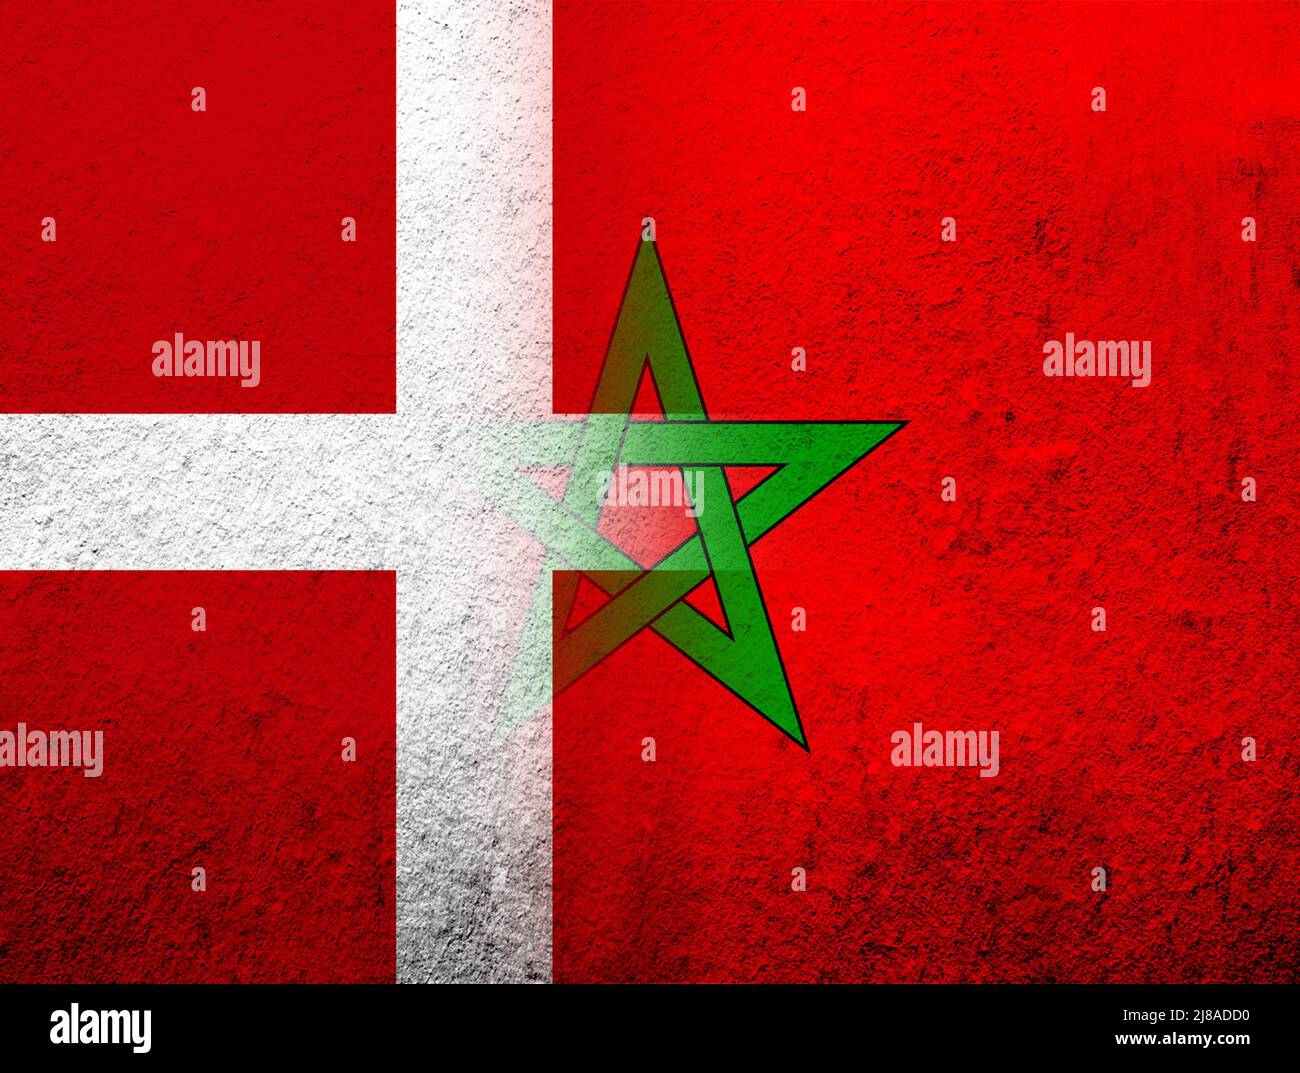 Le Royaume du Danemark drapeau national avec le Royaume du Maroc drapeau national. Grunge l'arrière-plan Banque D'Images